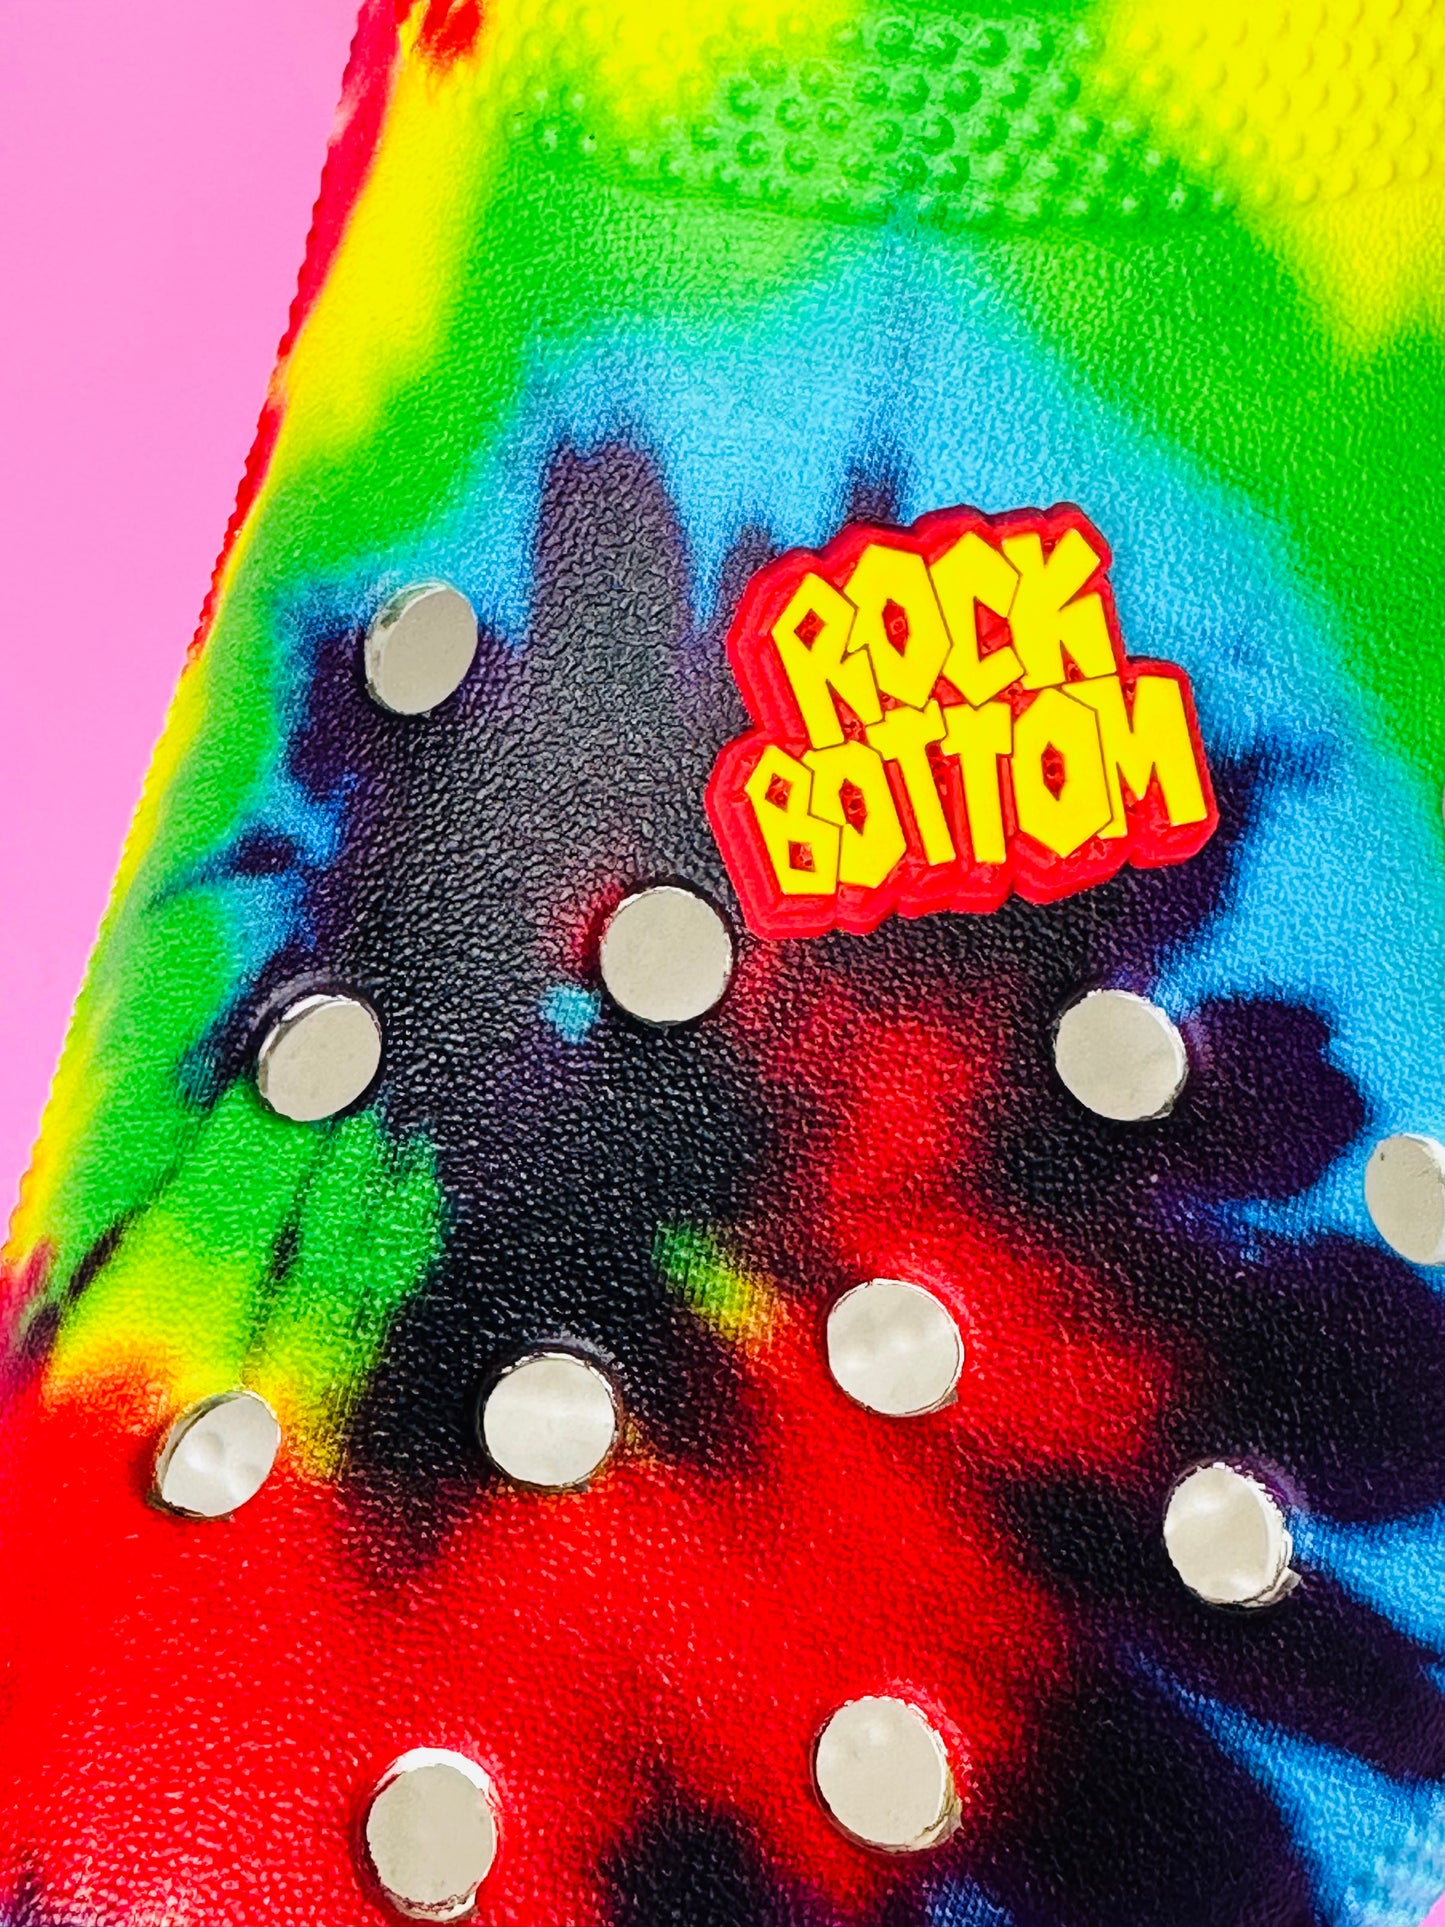 Rock Bottom | Bad Bunny Croc Shoe Charm